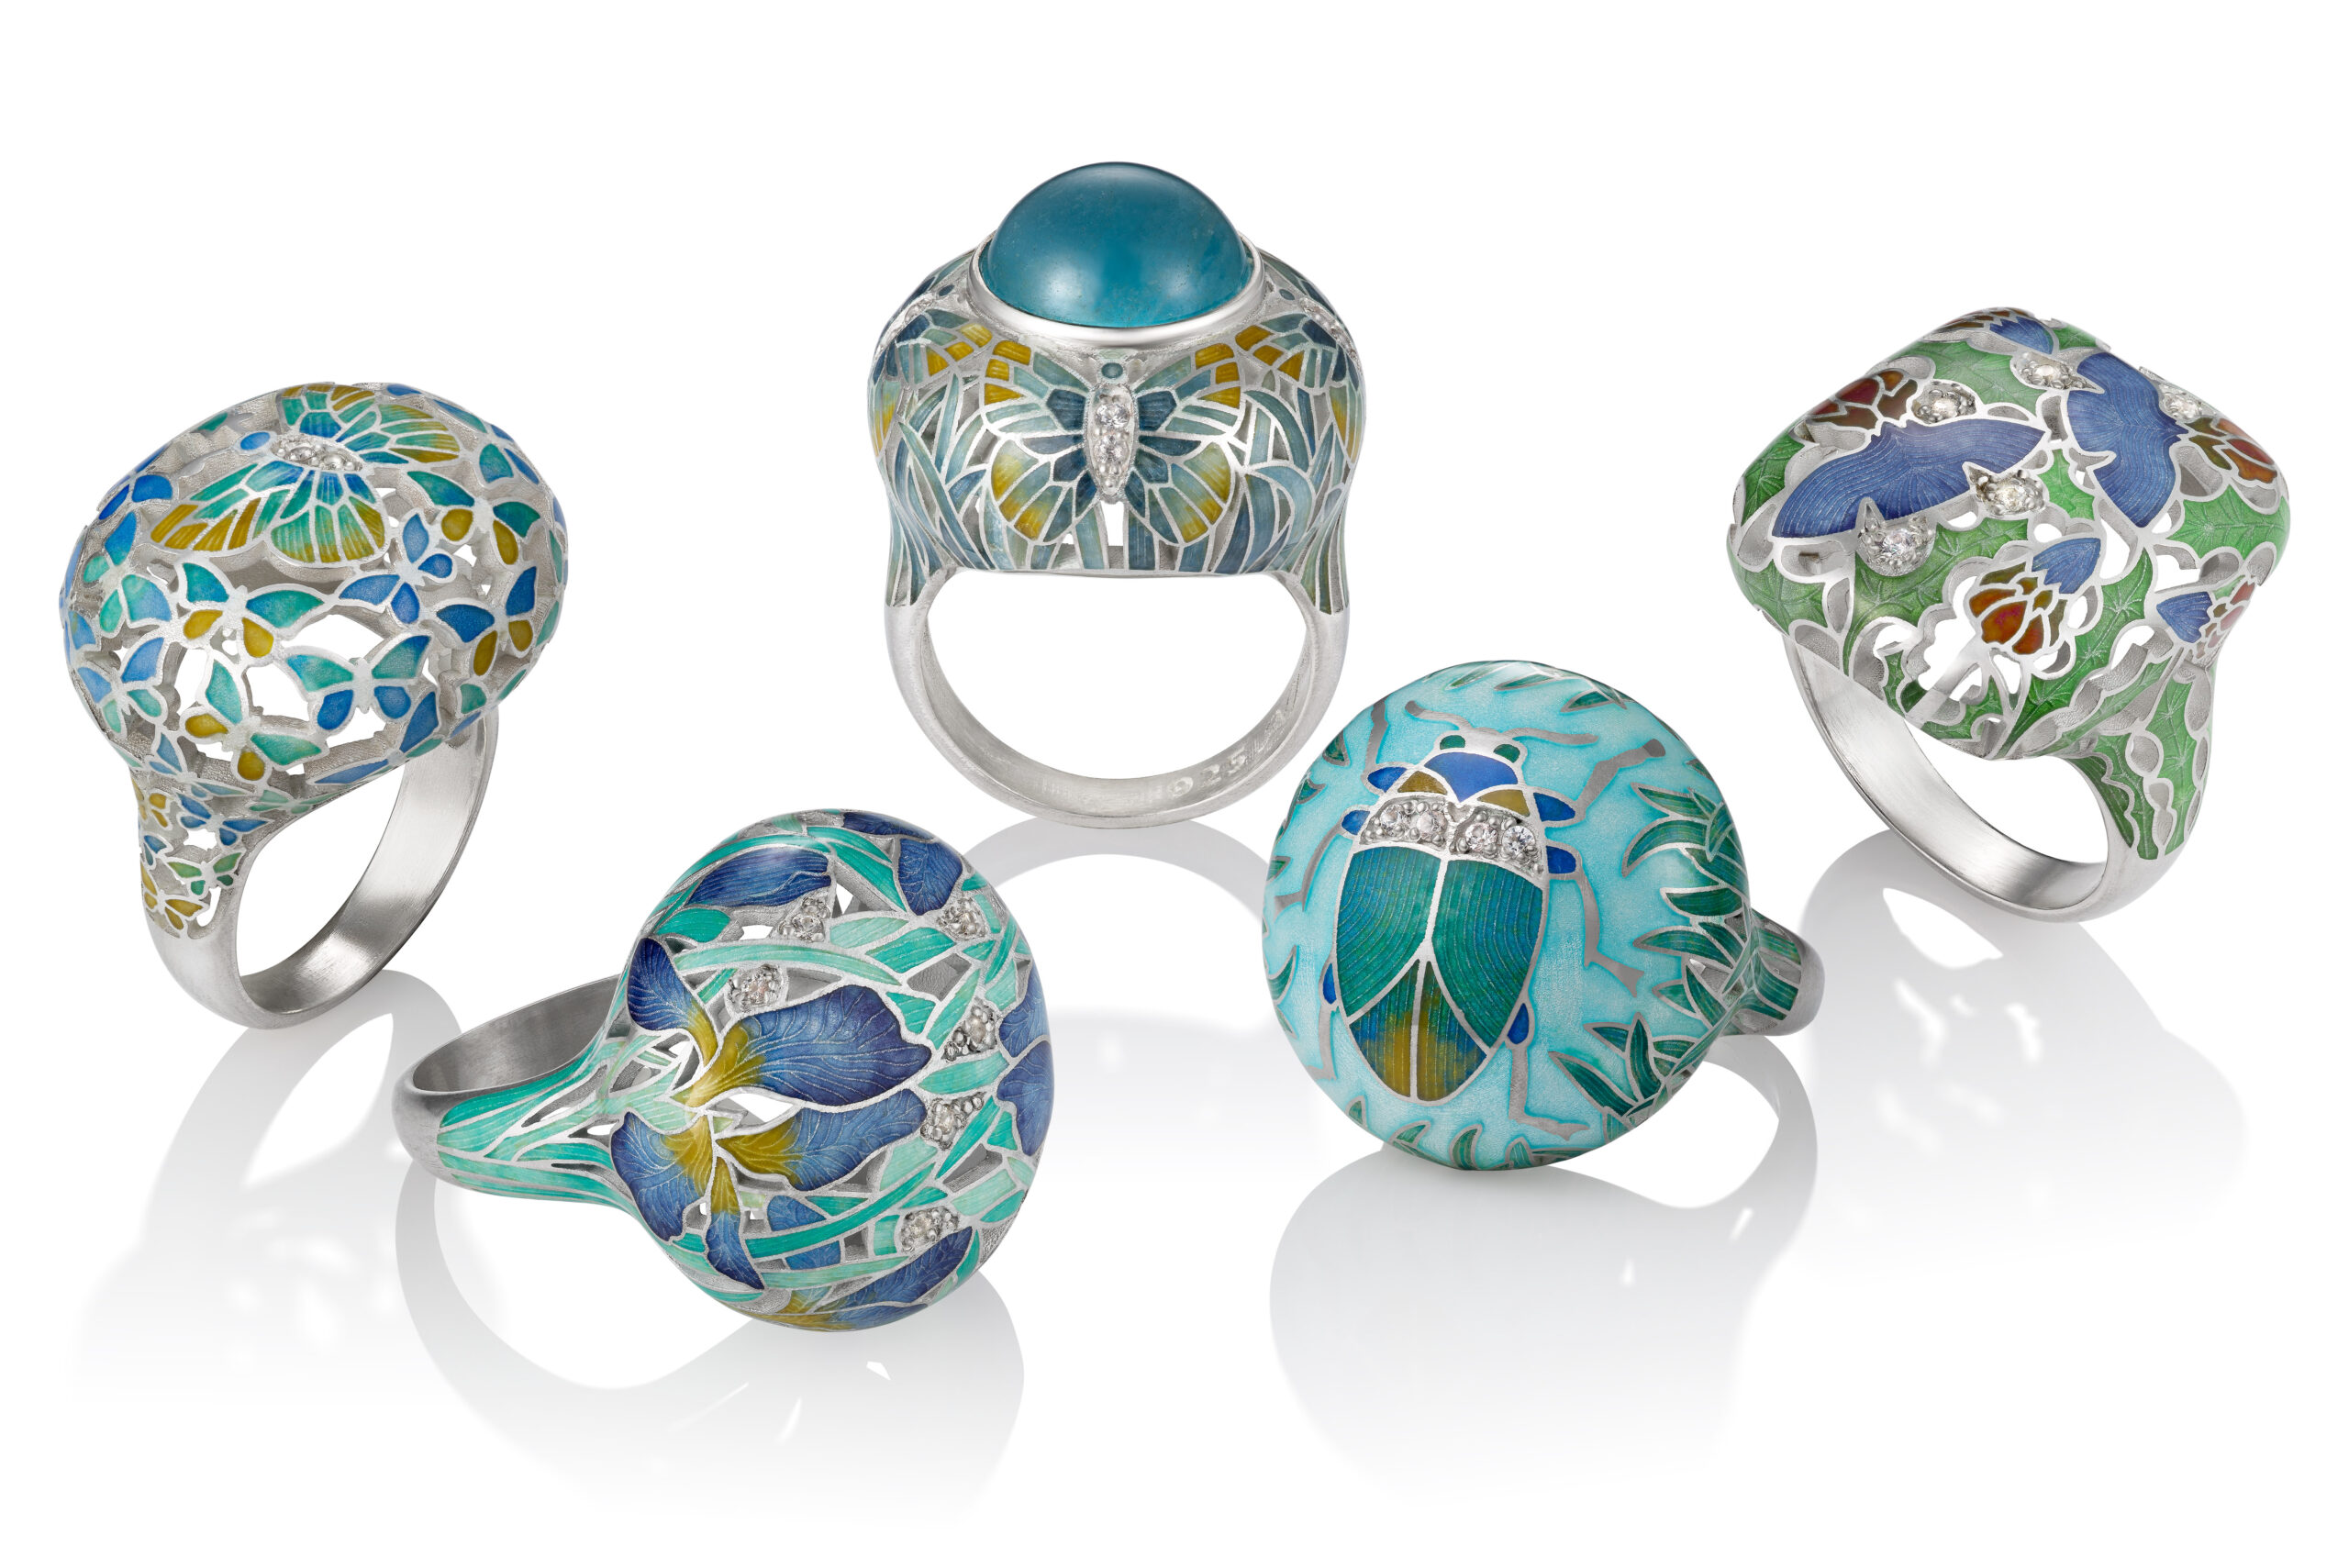 Selection of jewelry created by Nina Lara Novikova